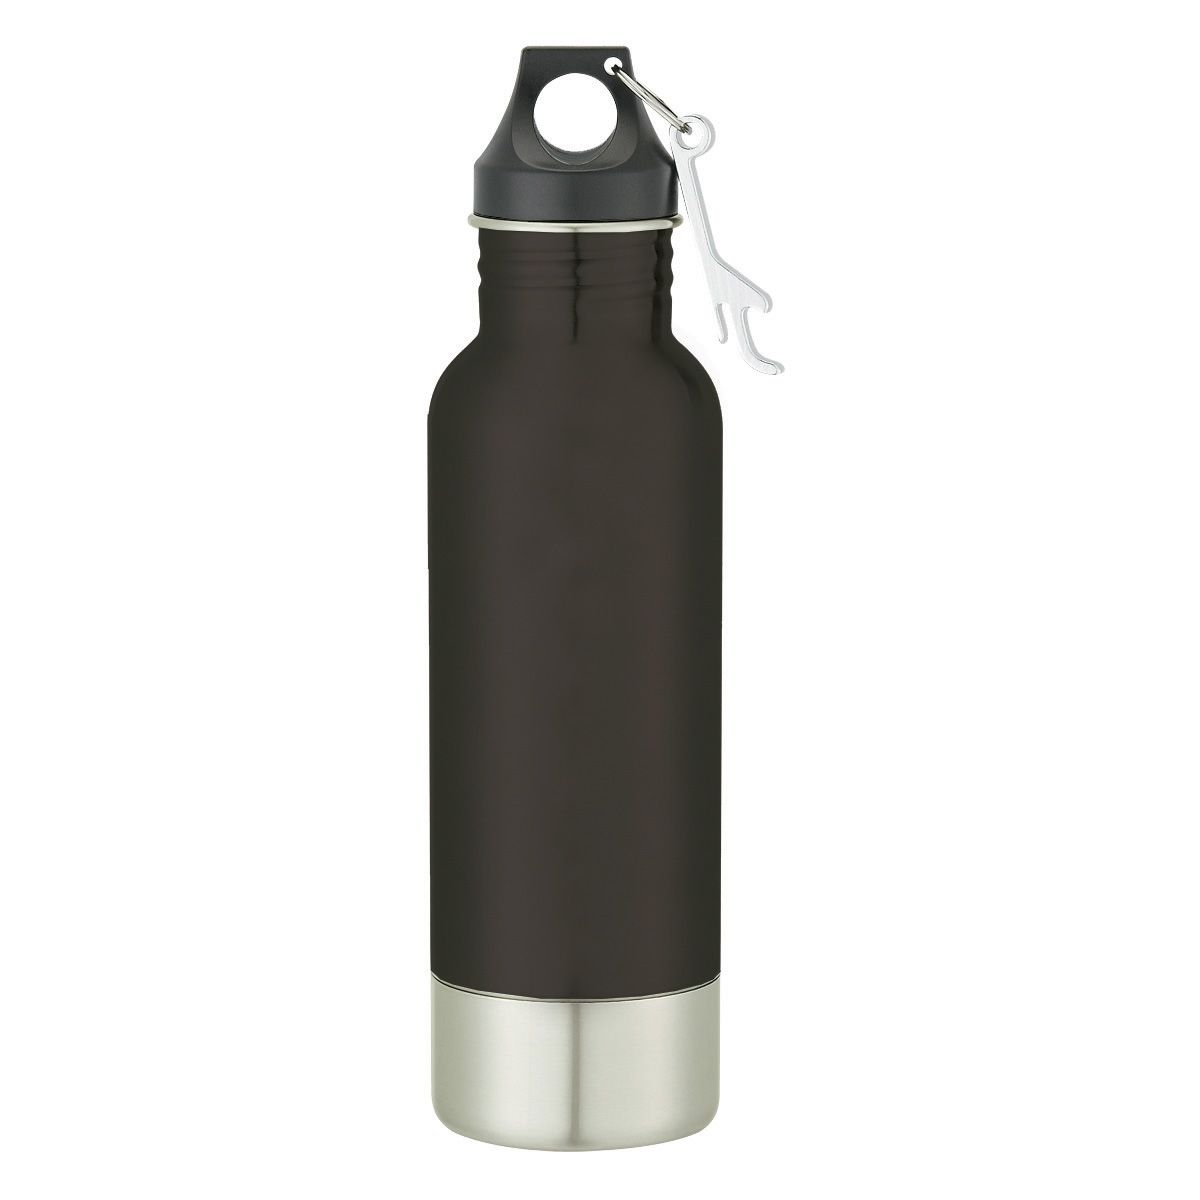 Custom Stainless Steel Bottle Carrier w/ Bottle Opener - 12oz